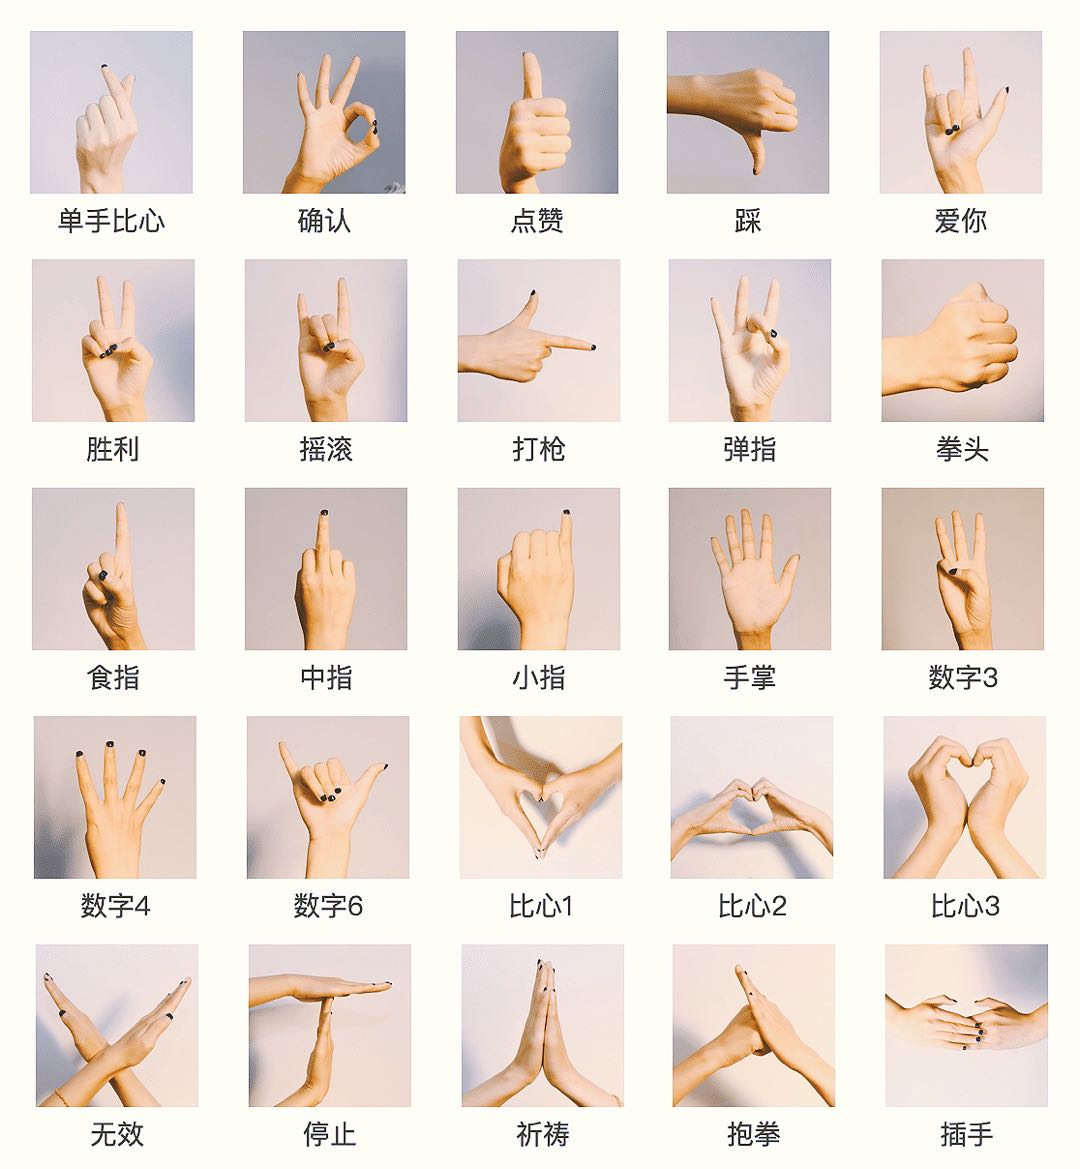 双手手势有:比心1,比心2,比心3,无效,停止,祈祷,抱拳,插手.